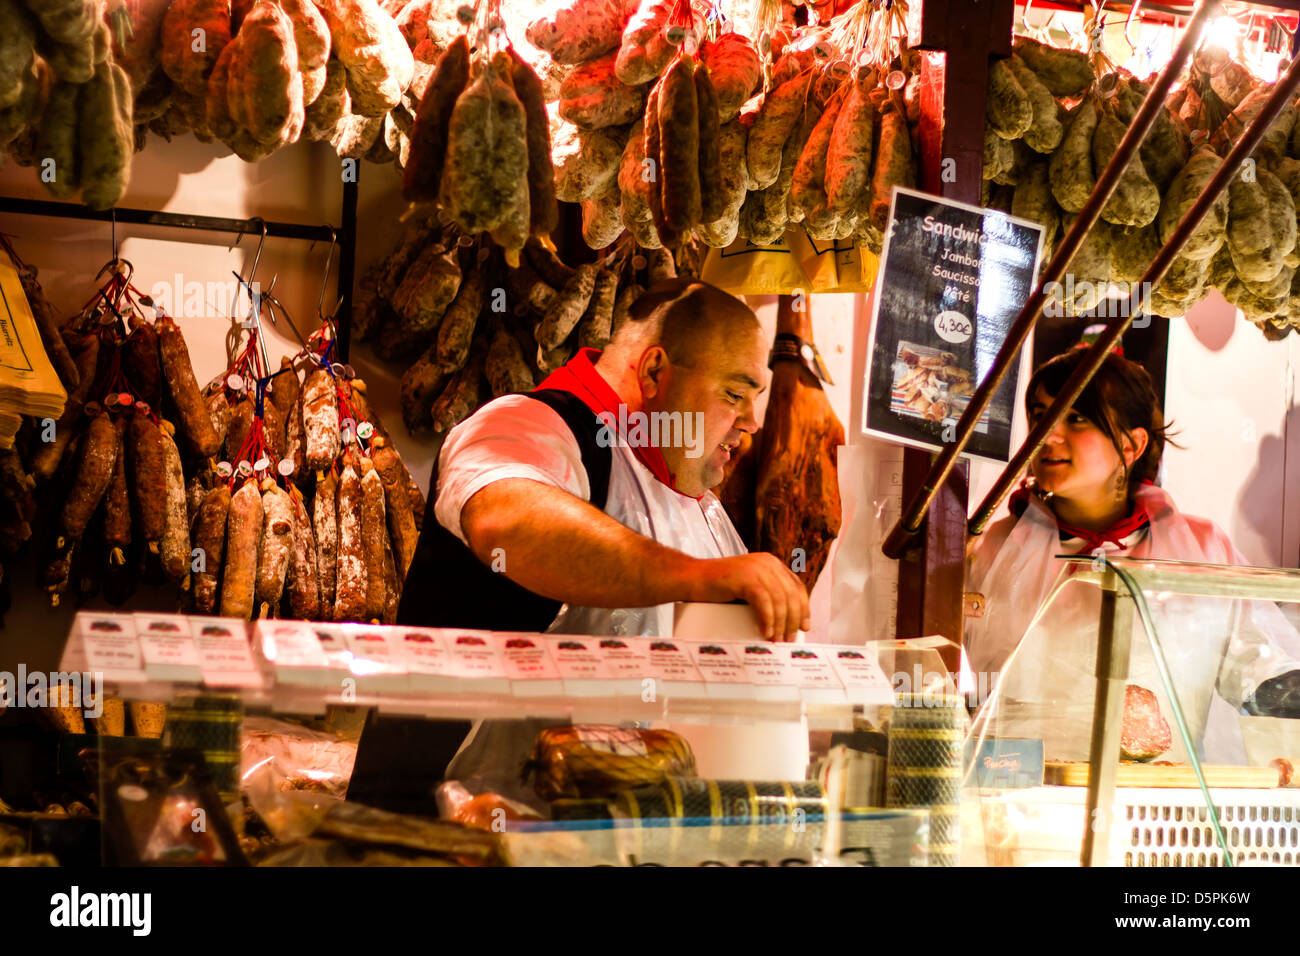 Saucisson vendeur pendant les foires agricoles 2013 à Paris, France Banque D'Images